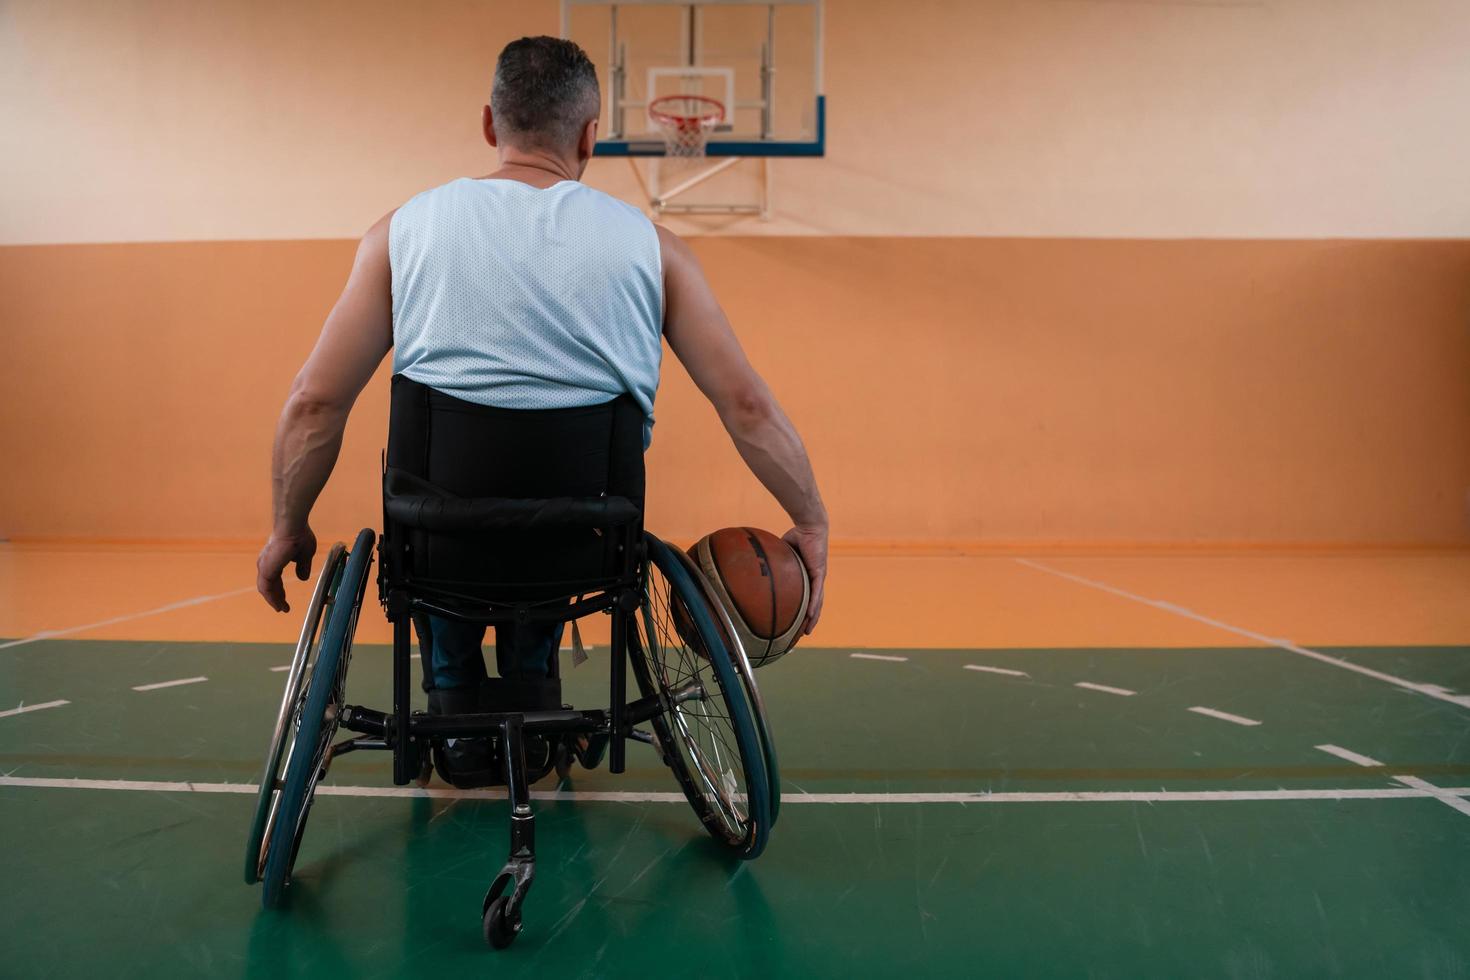 close-up foto de cadeiras de rodas e veteranos de guerra deficientes jogando basquete na quadra